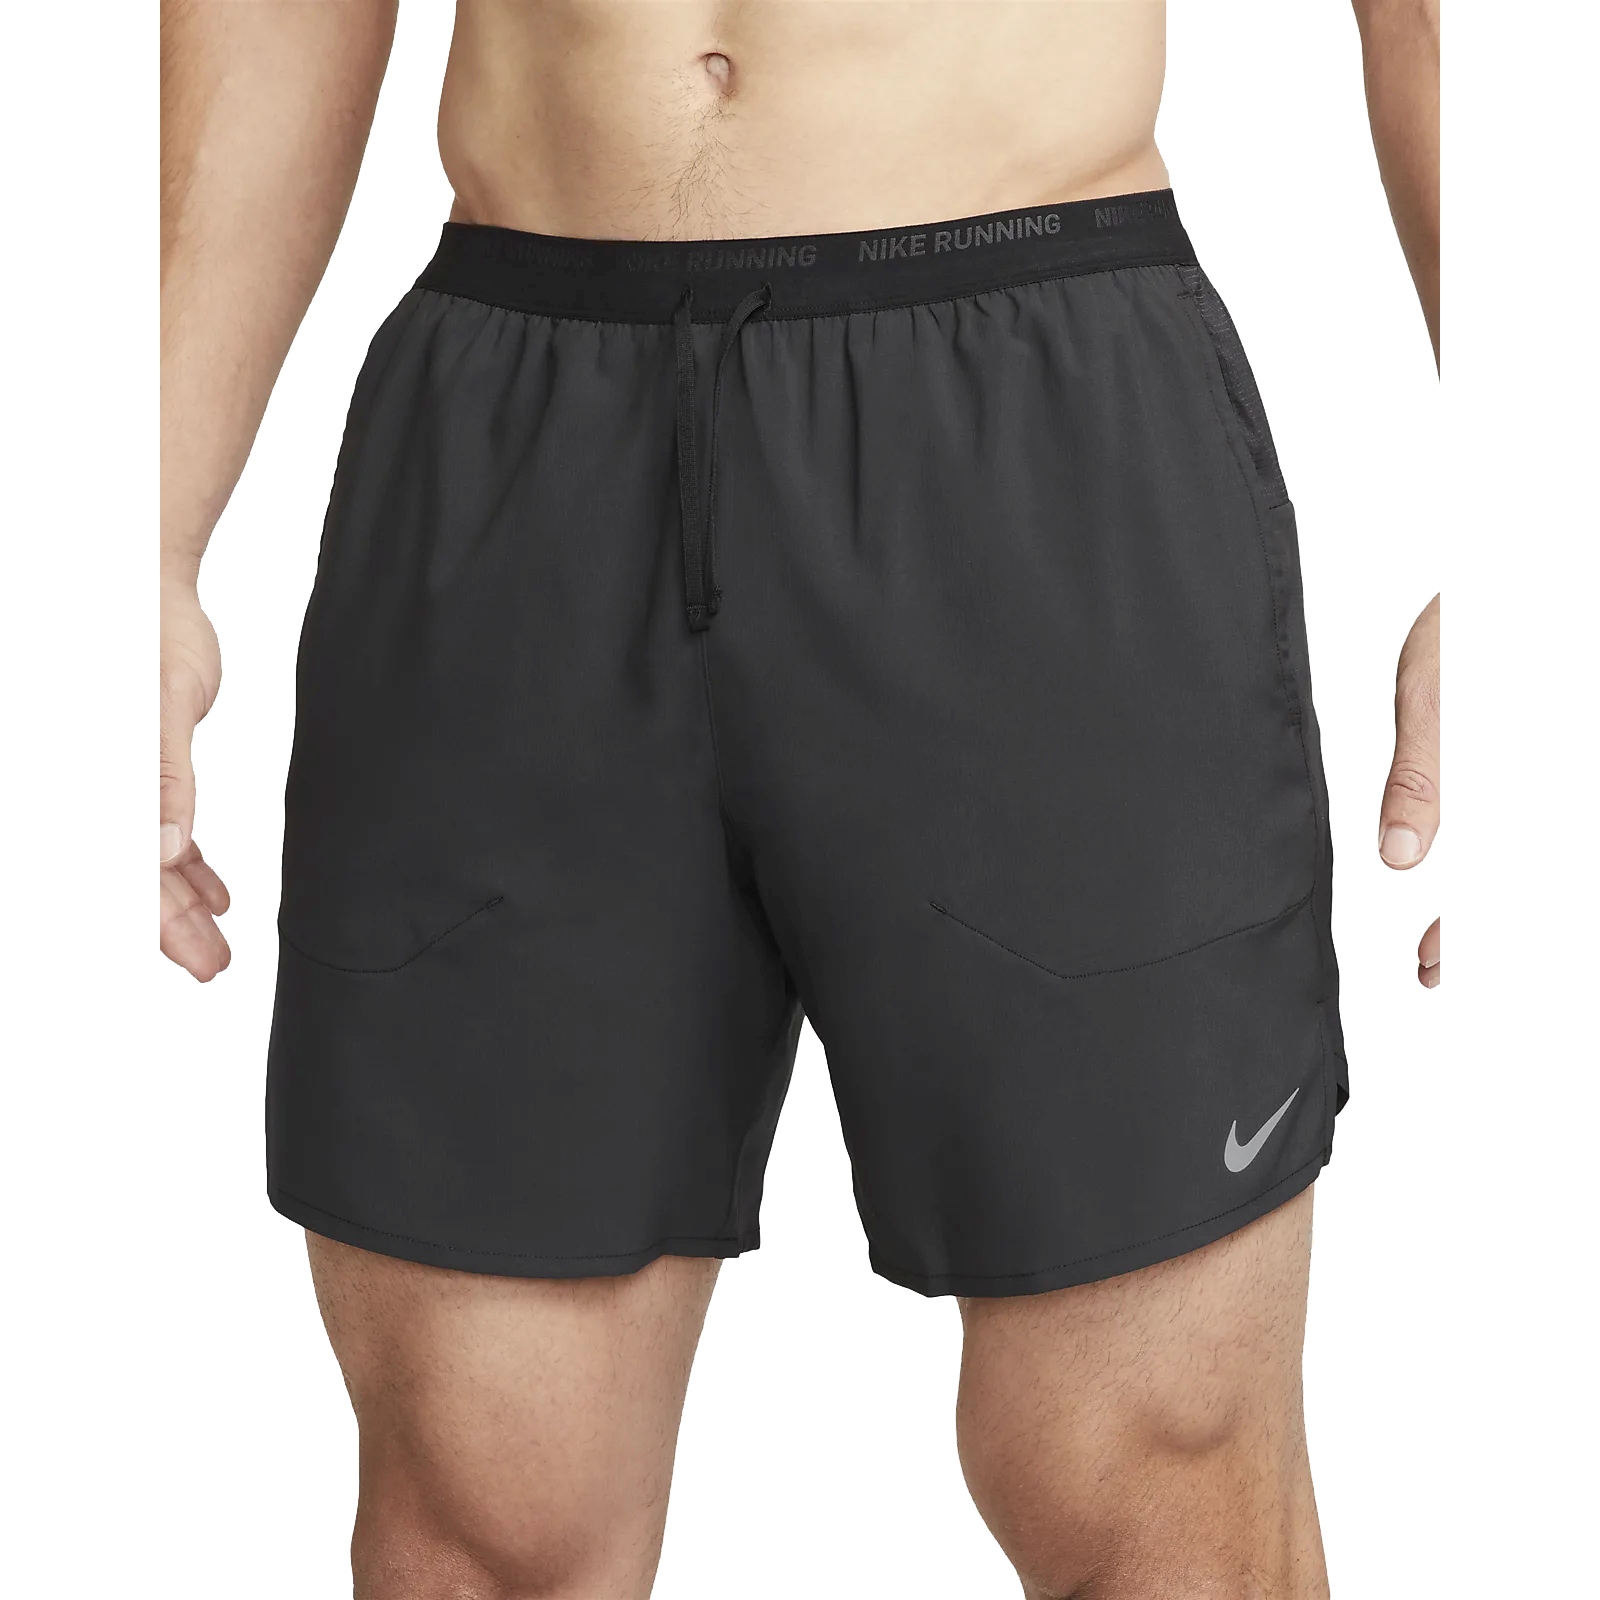 Immagine di Nike Pantaloncini 7" Uomo - Dri-FIT Stride Brief-Lined - black/black/reflective silver DM4761-010